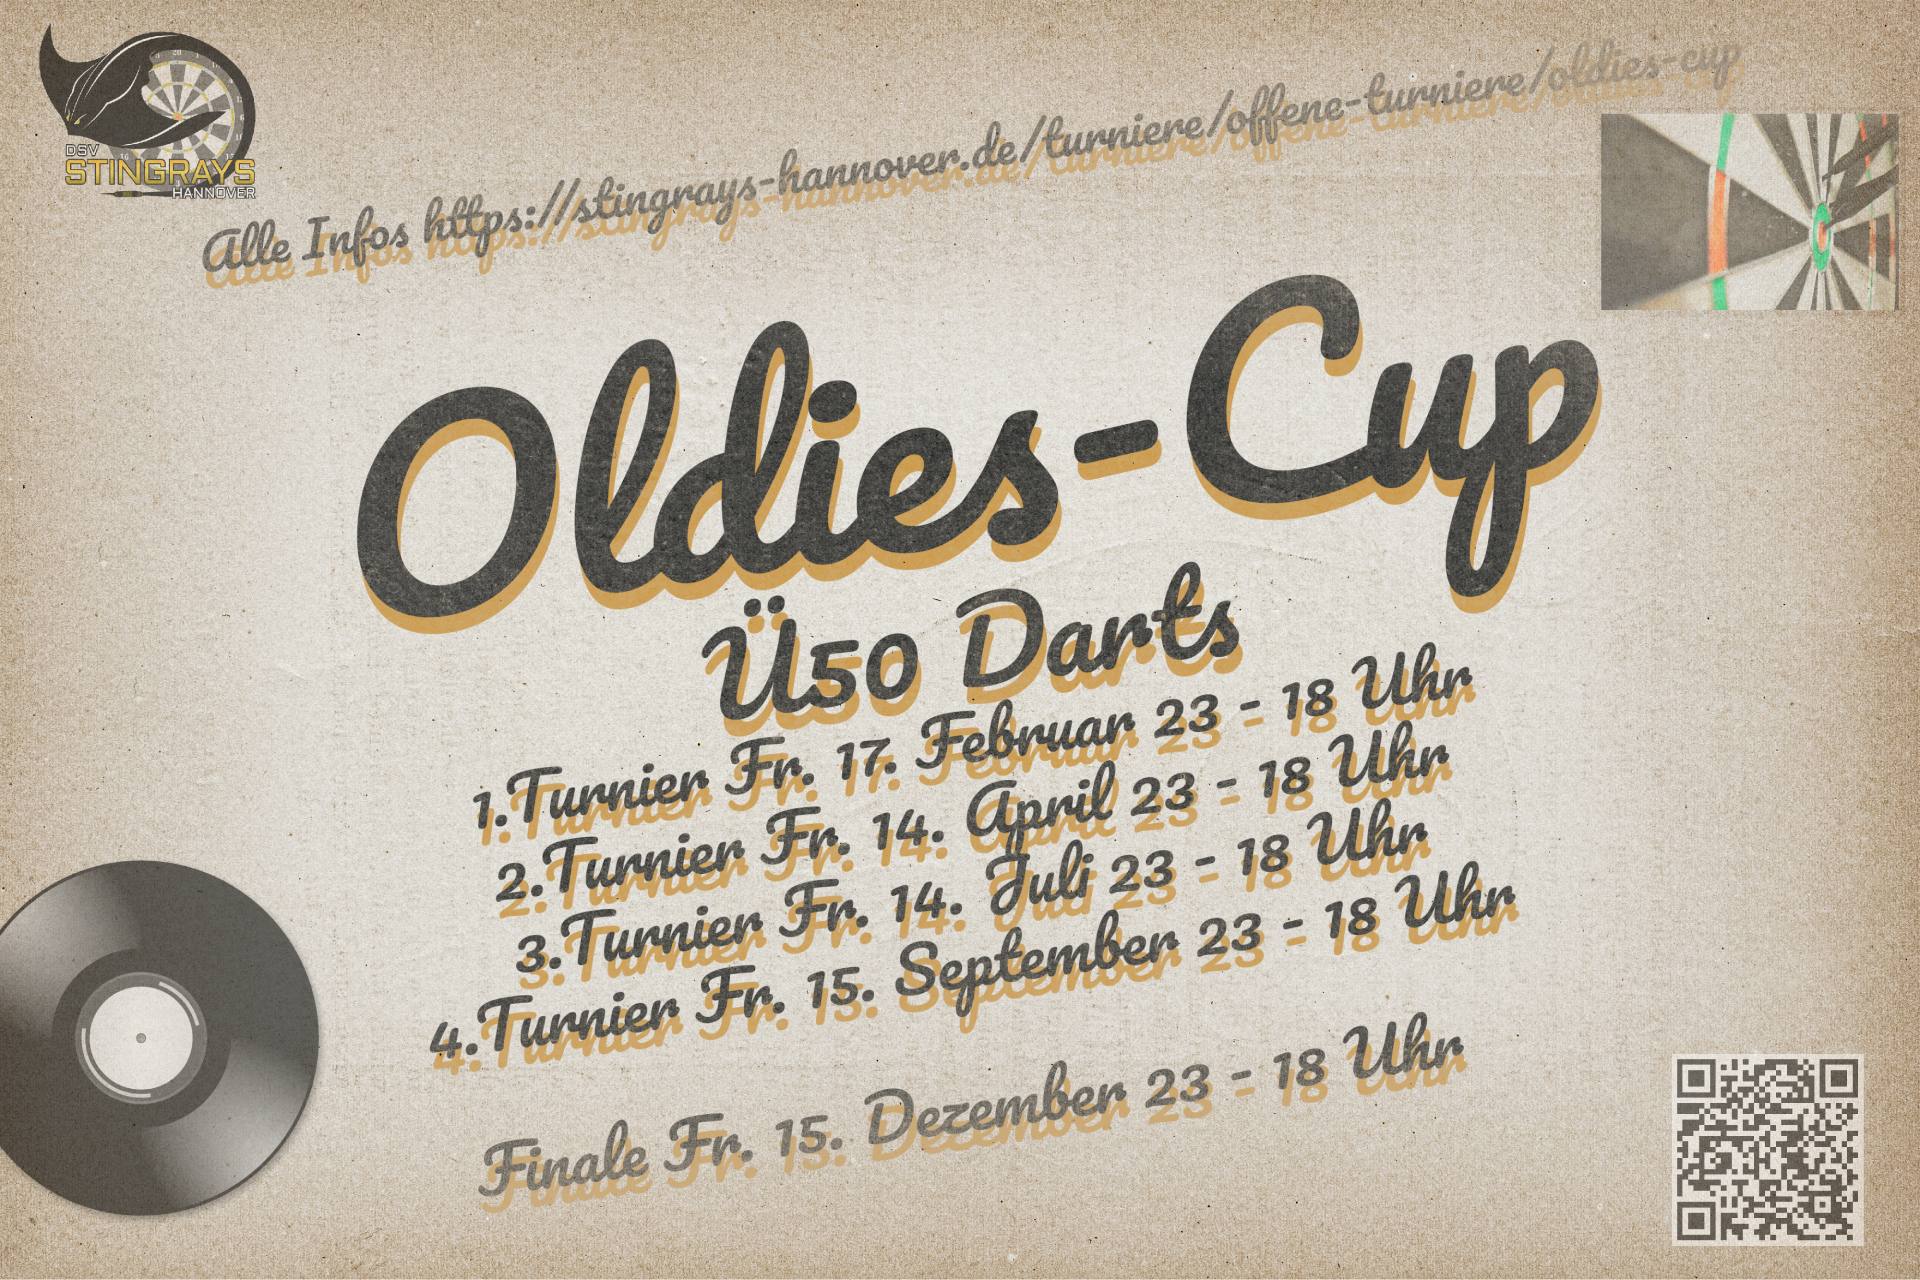 Oldies Cup